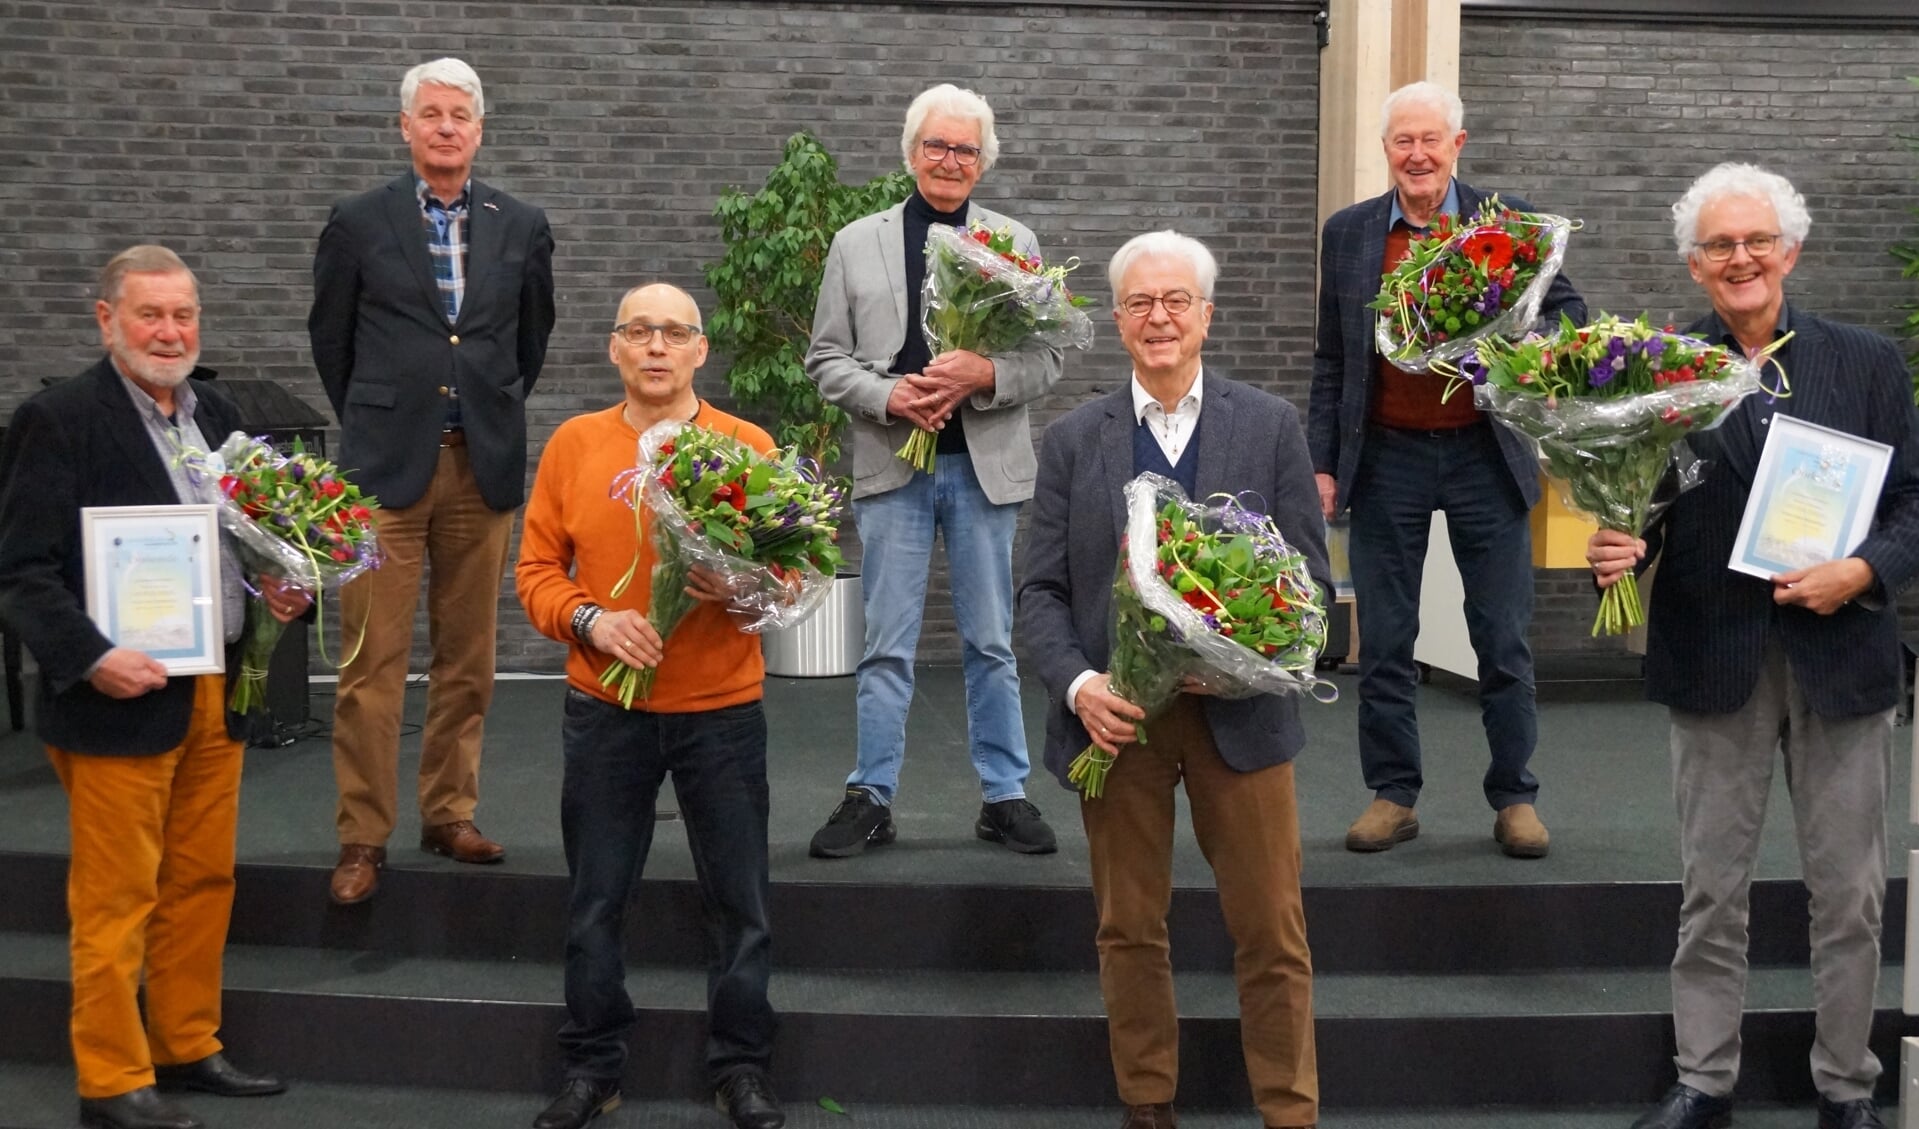 Achter vlnr Jan ter Steeg (voorzitter), Gerrit Kombrink en Frans Poorter. Voor vlnr Willem van Meer, Marco Besselsen, Joost de Graaf en Wouter Willemsen. 